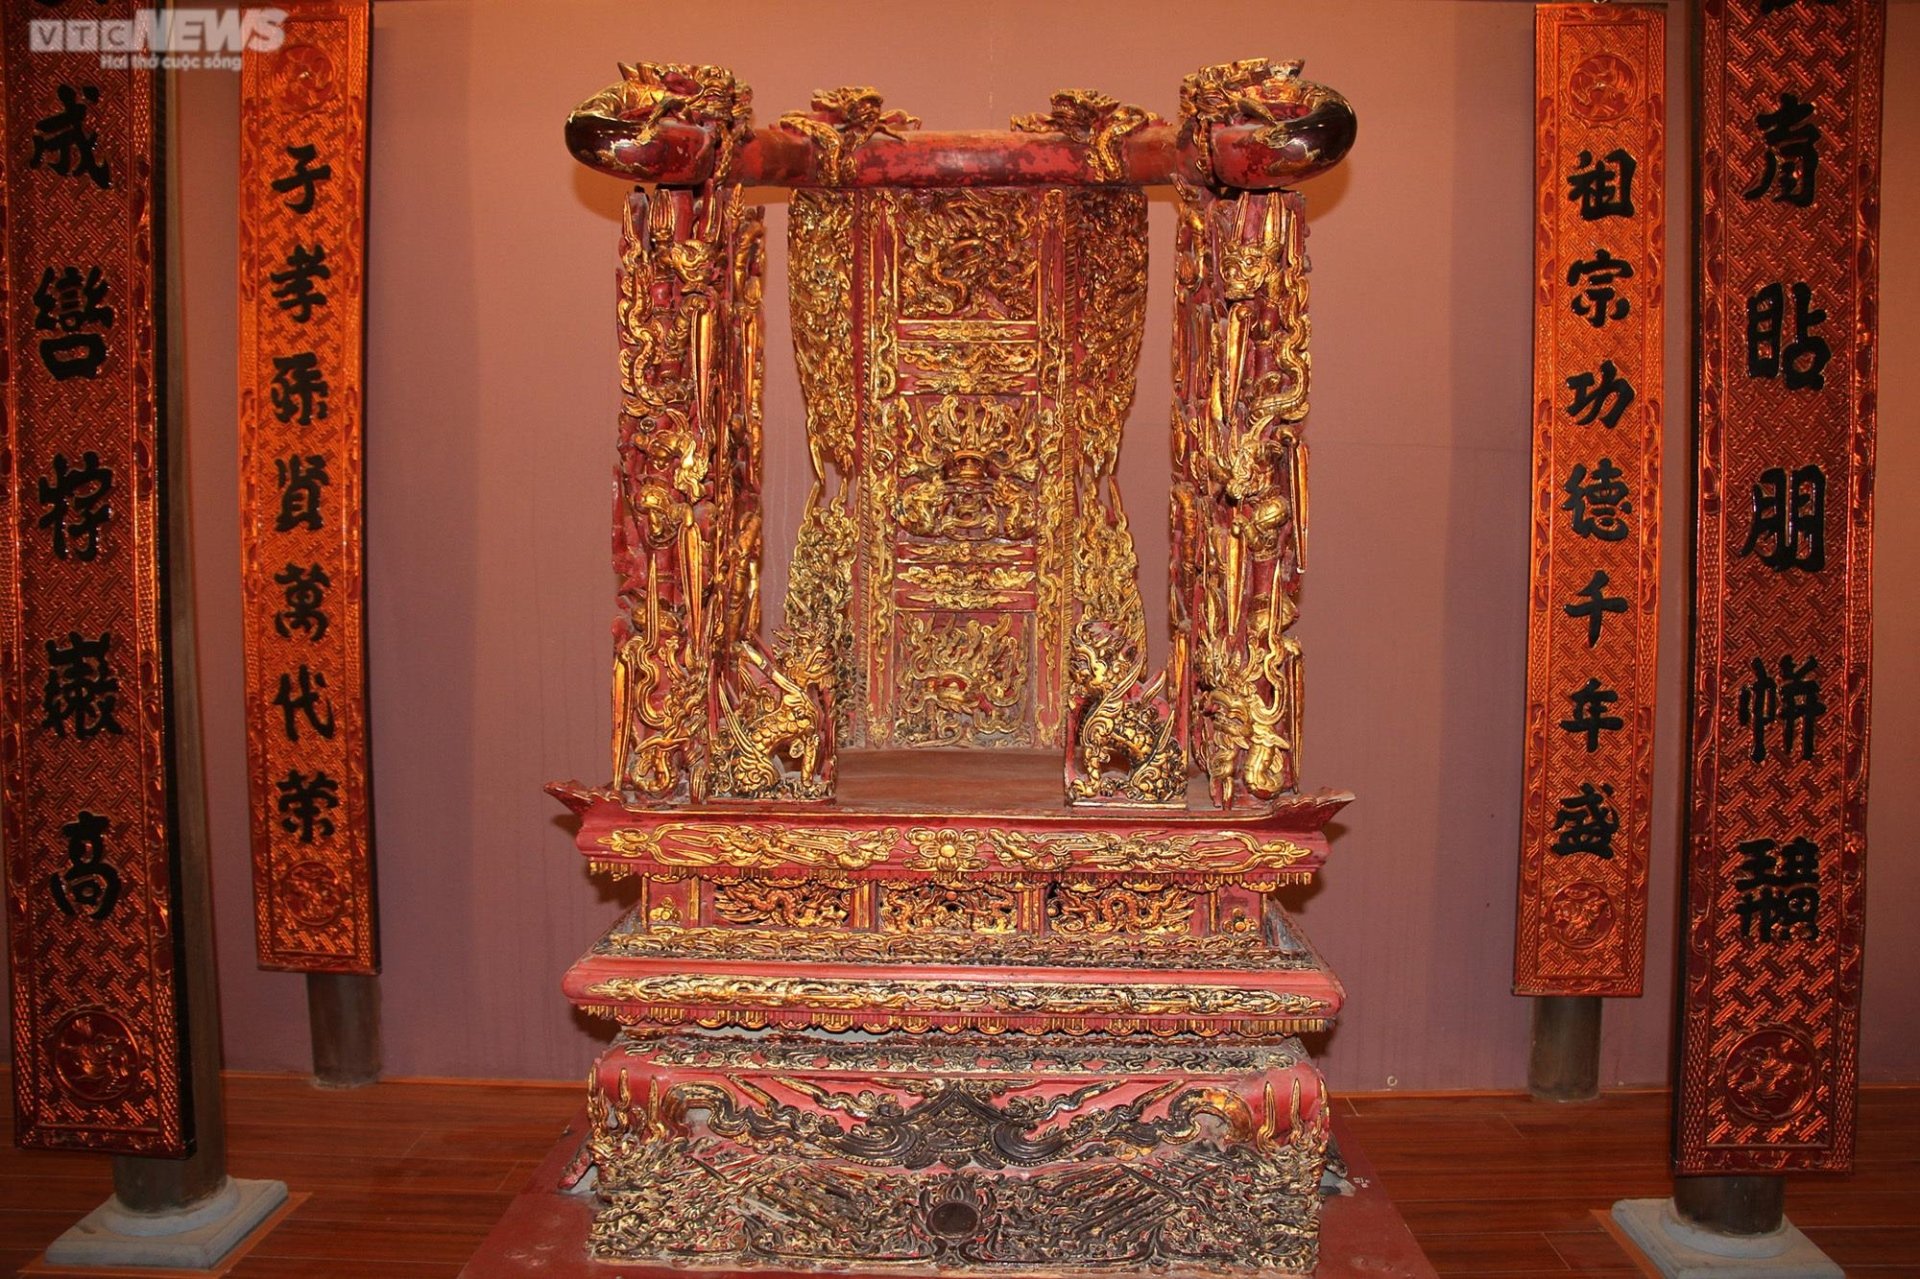 Chiêm ngưỡng ngai thờ độc nhất vô nhị hơn 300 năm tuổi ở Thái Bình - 4